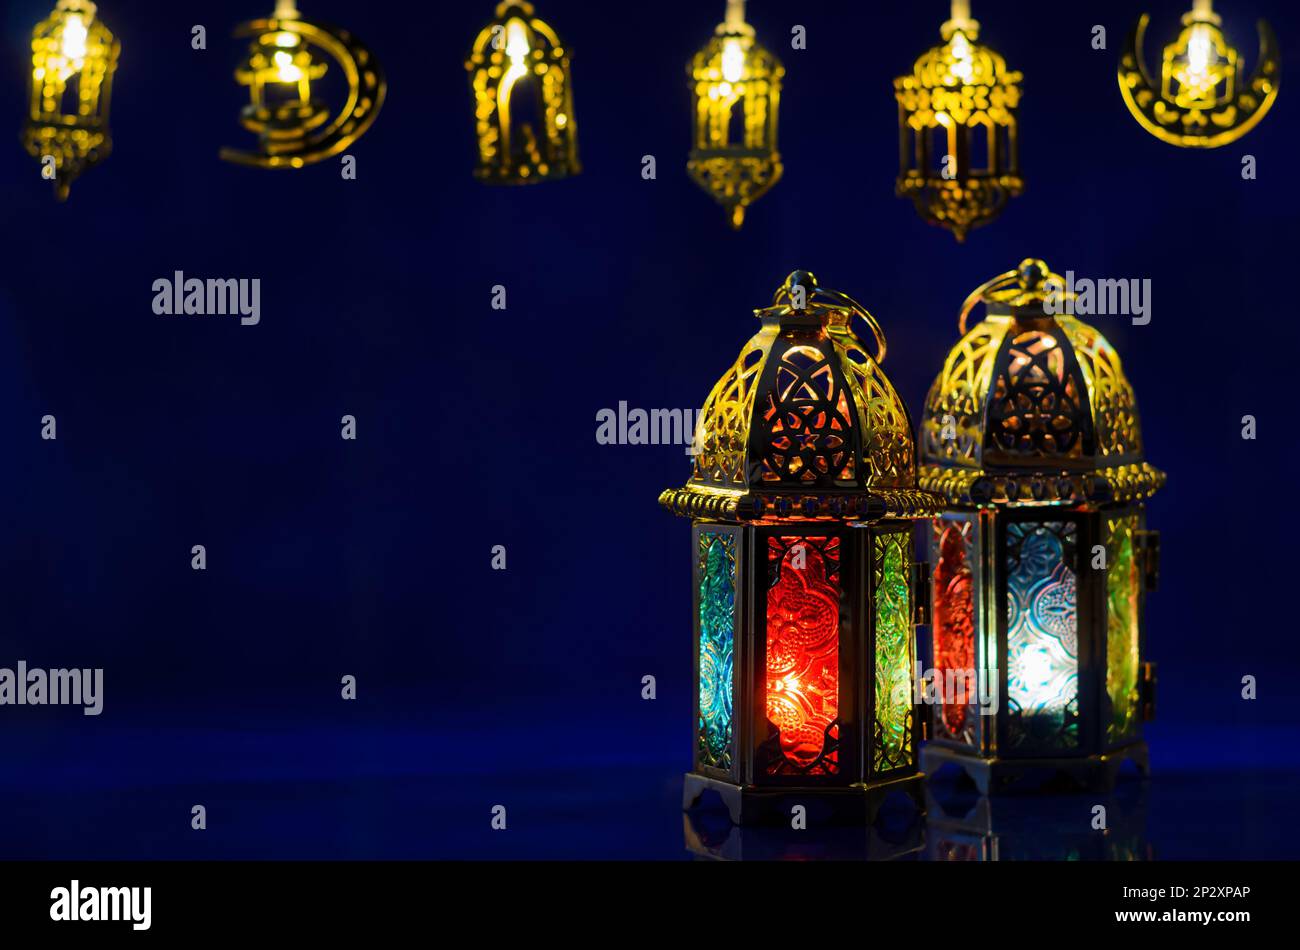 Le lanterne dorate hanno messo sullo sfondo blu scuro con luci decorate per la festa musulmana del mese santo di Ramadan Kareem. Foto Stock